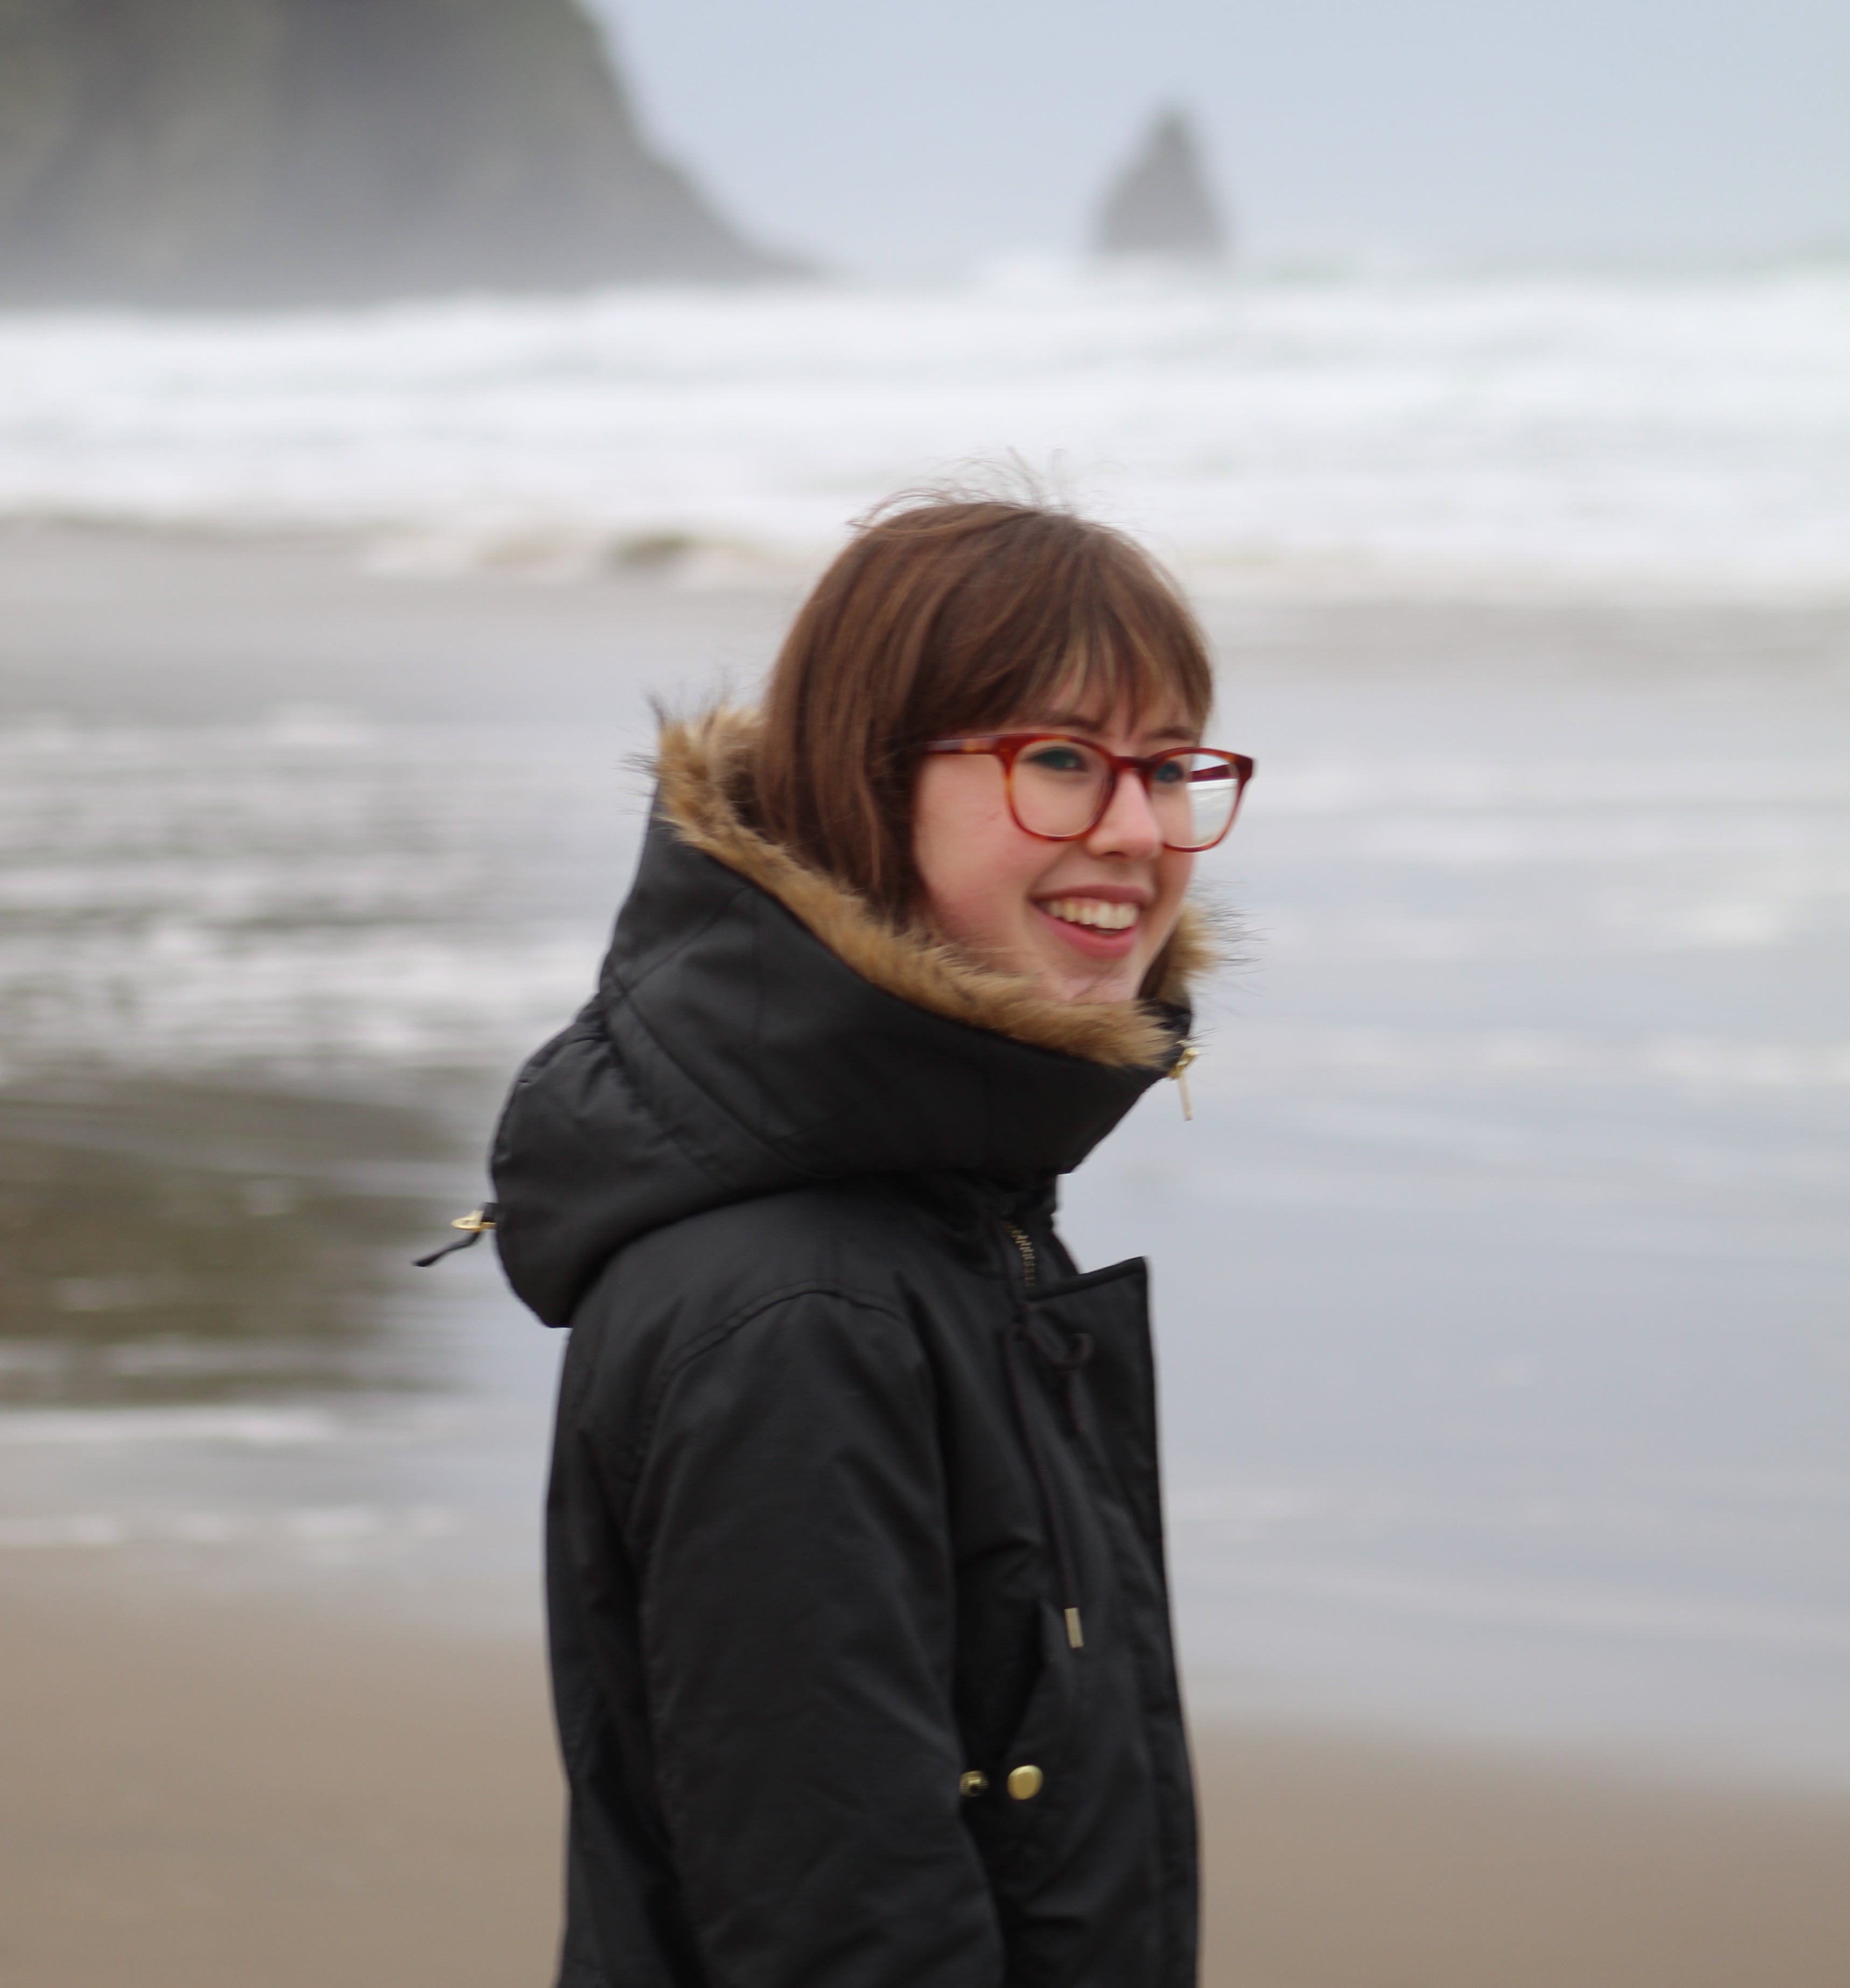 Emily Fowler on the Oregon coast